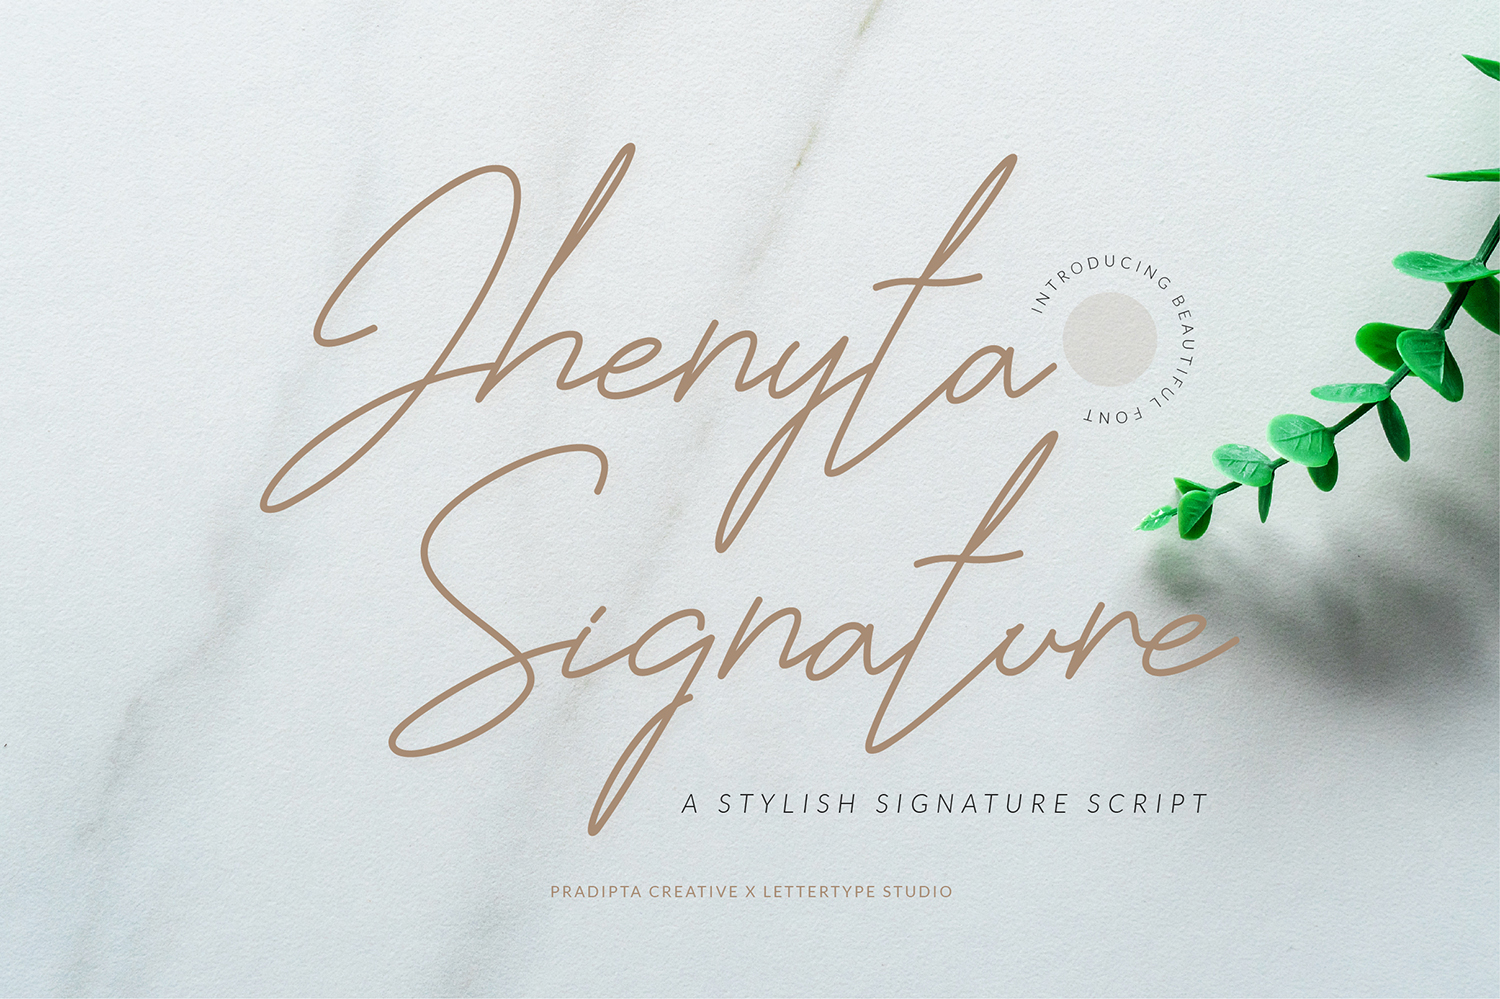 Jhenyta Signature Script